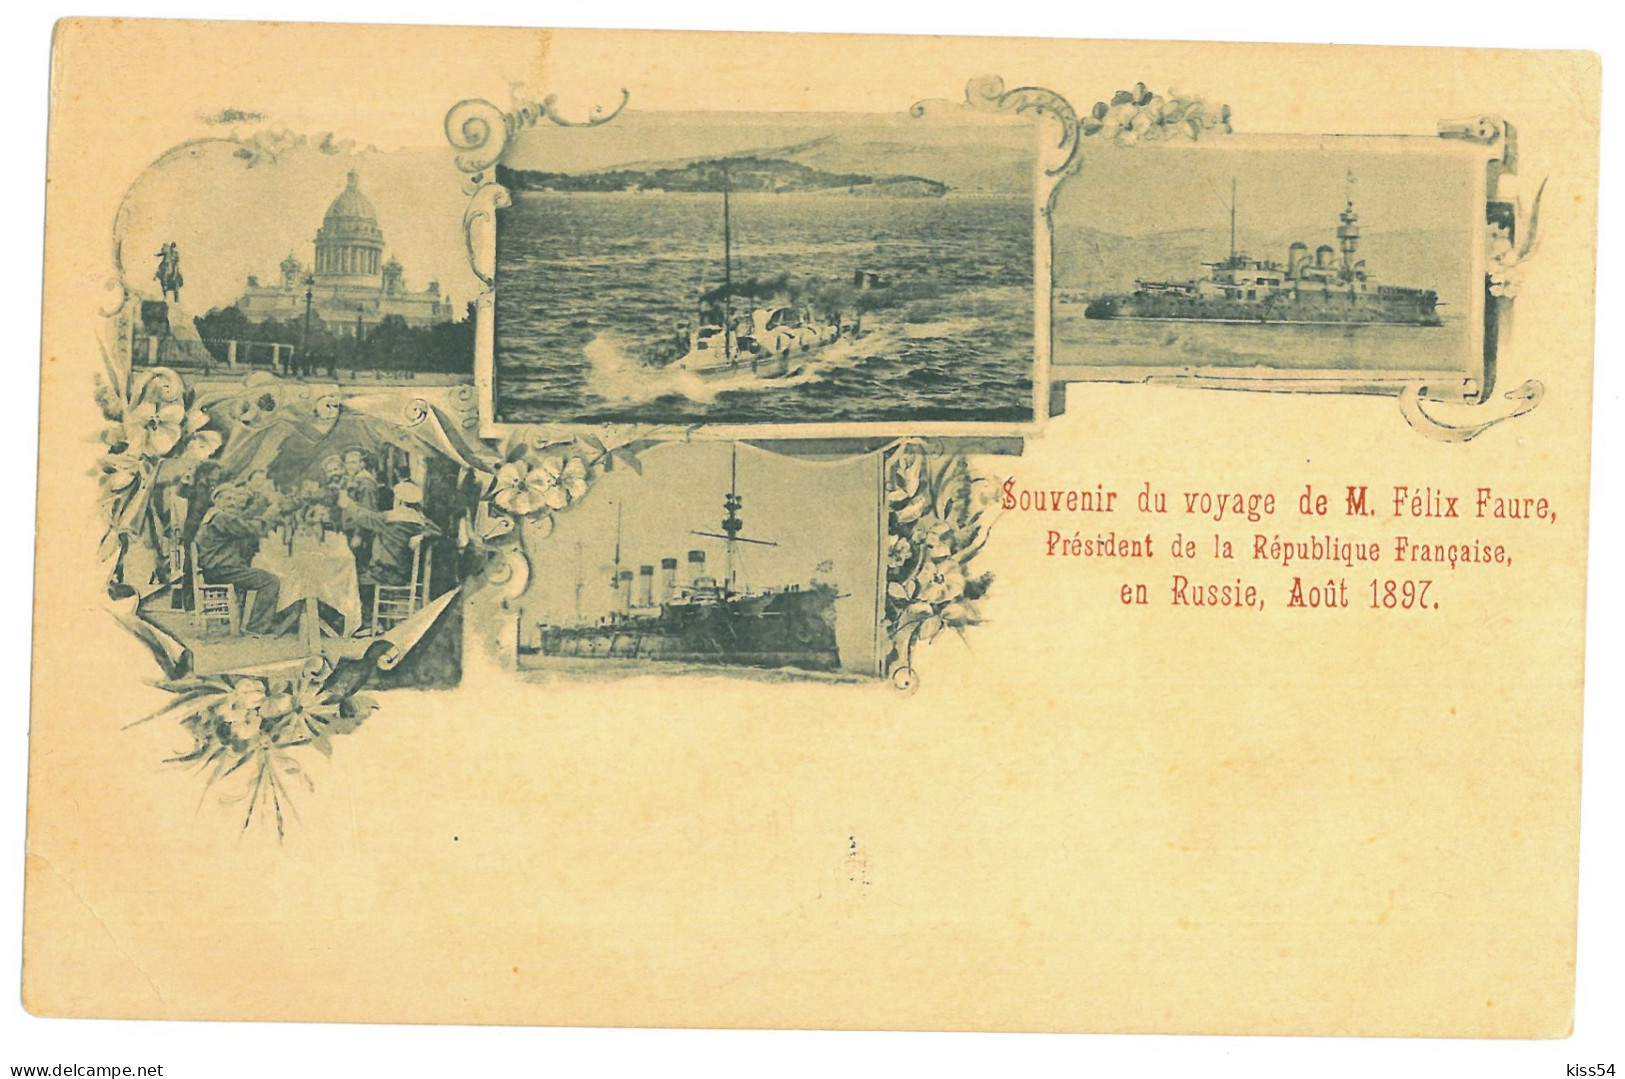 RUS 91 - 21258 SAINT PETERSBURG, Ships, Litho, Russia - Old Postcard - Unused - Russland